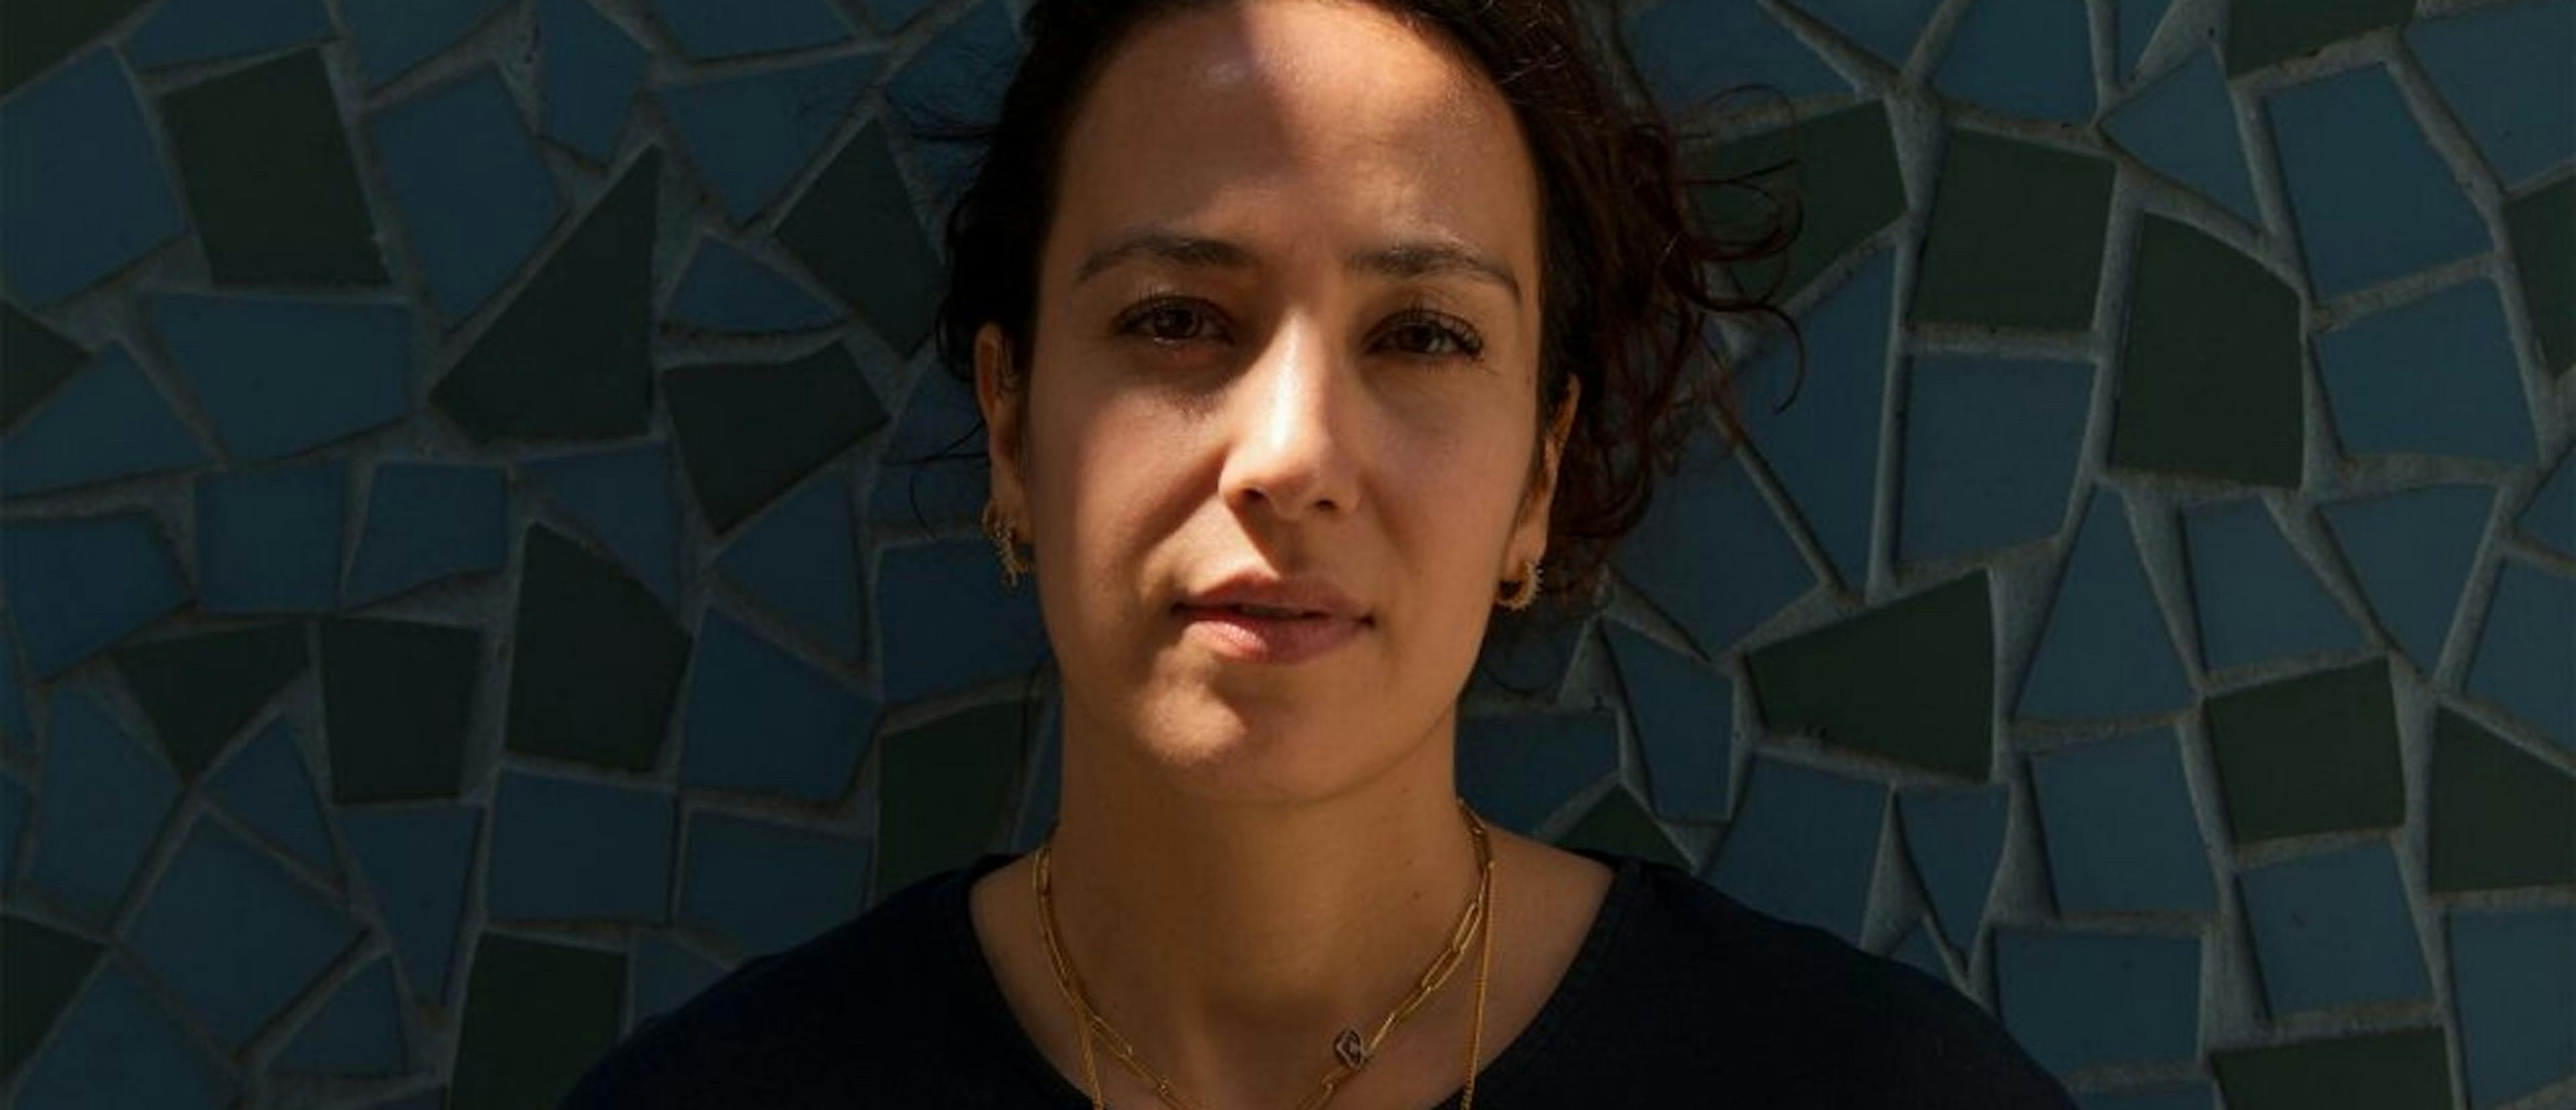 Posado de Nora El Hourch, directora de 'HLM Pussy', inspirada por su propia vida